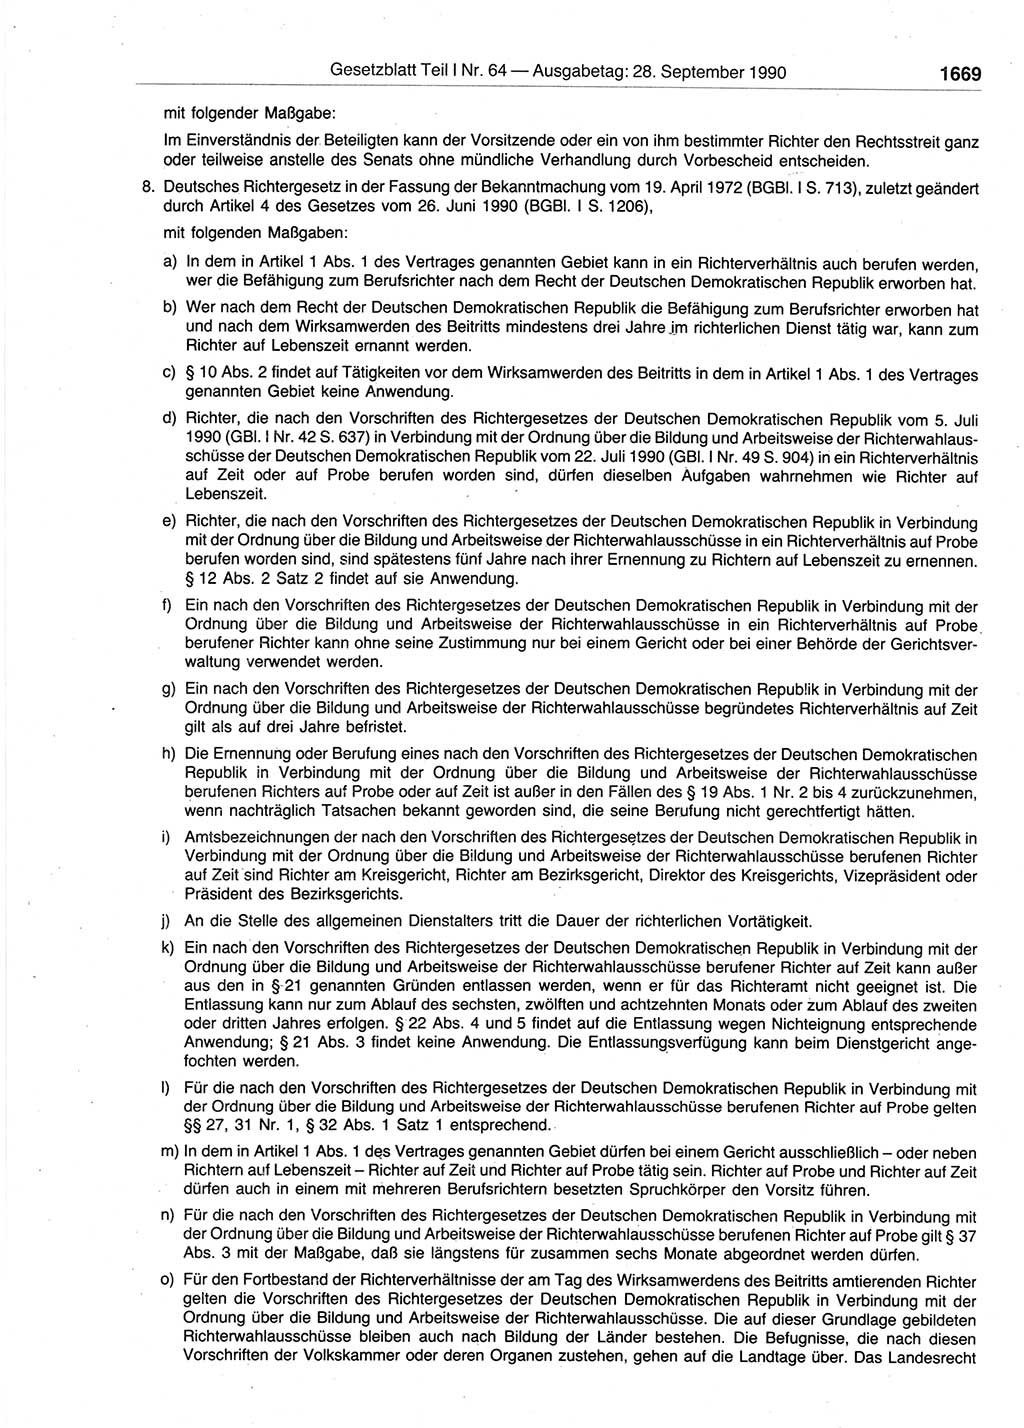 Gesetzblatt (GBl.) der Deutschen Demokratischen Republik (DDR) Teil Ⅰ 1990, Seite 1669 (GBl. DDR Ⅰ 1990, S. 1669)